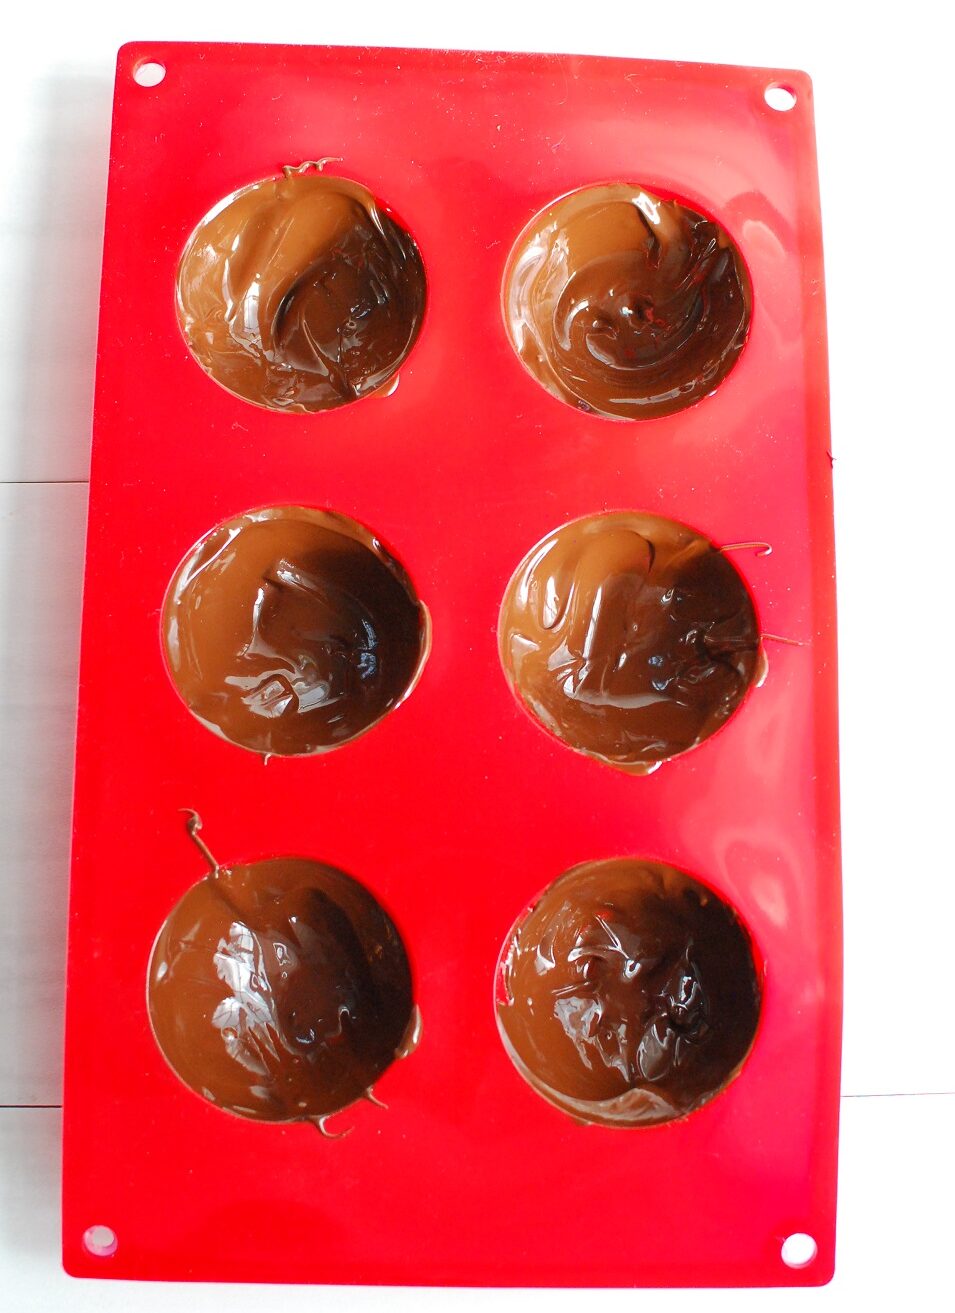 chocolate spread into a silicone dome mold